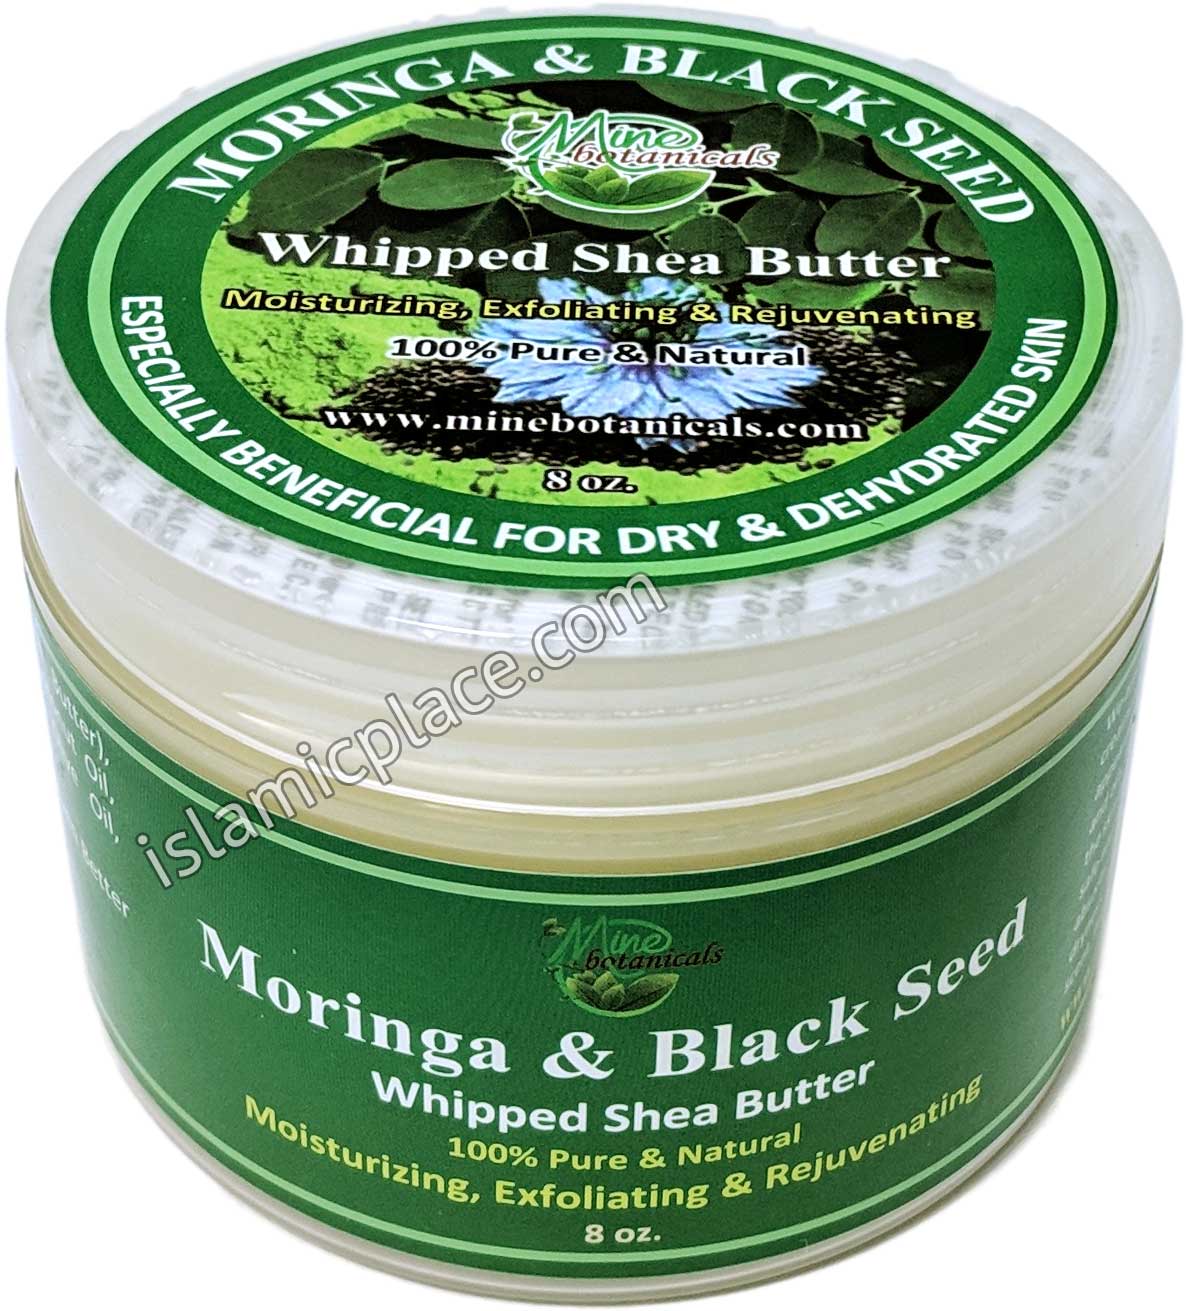 Moringa & Black Seed Whipped Shea Butter